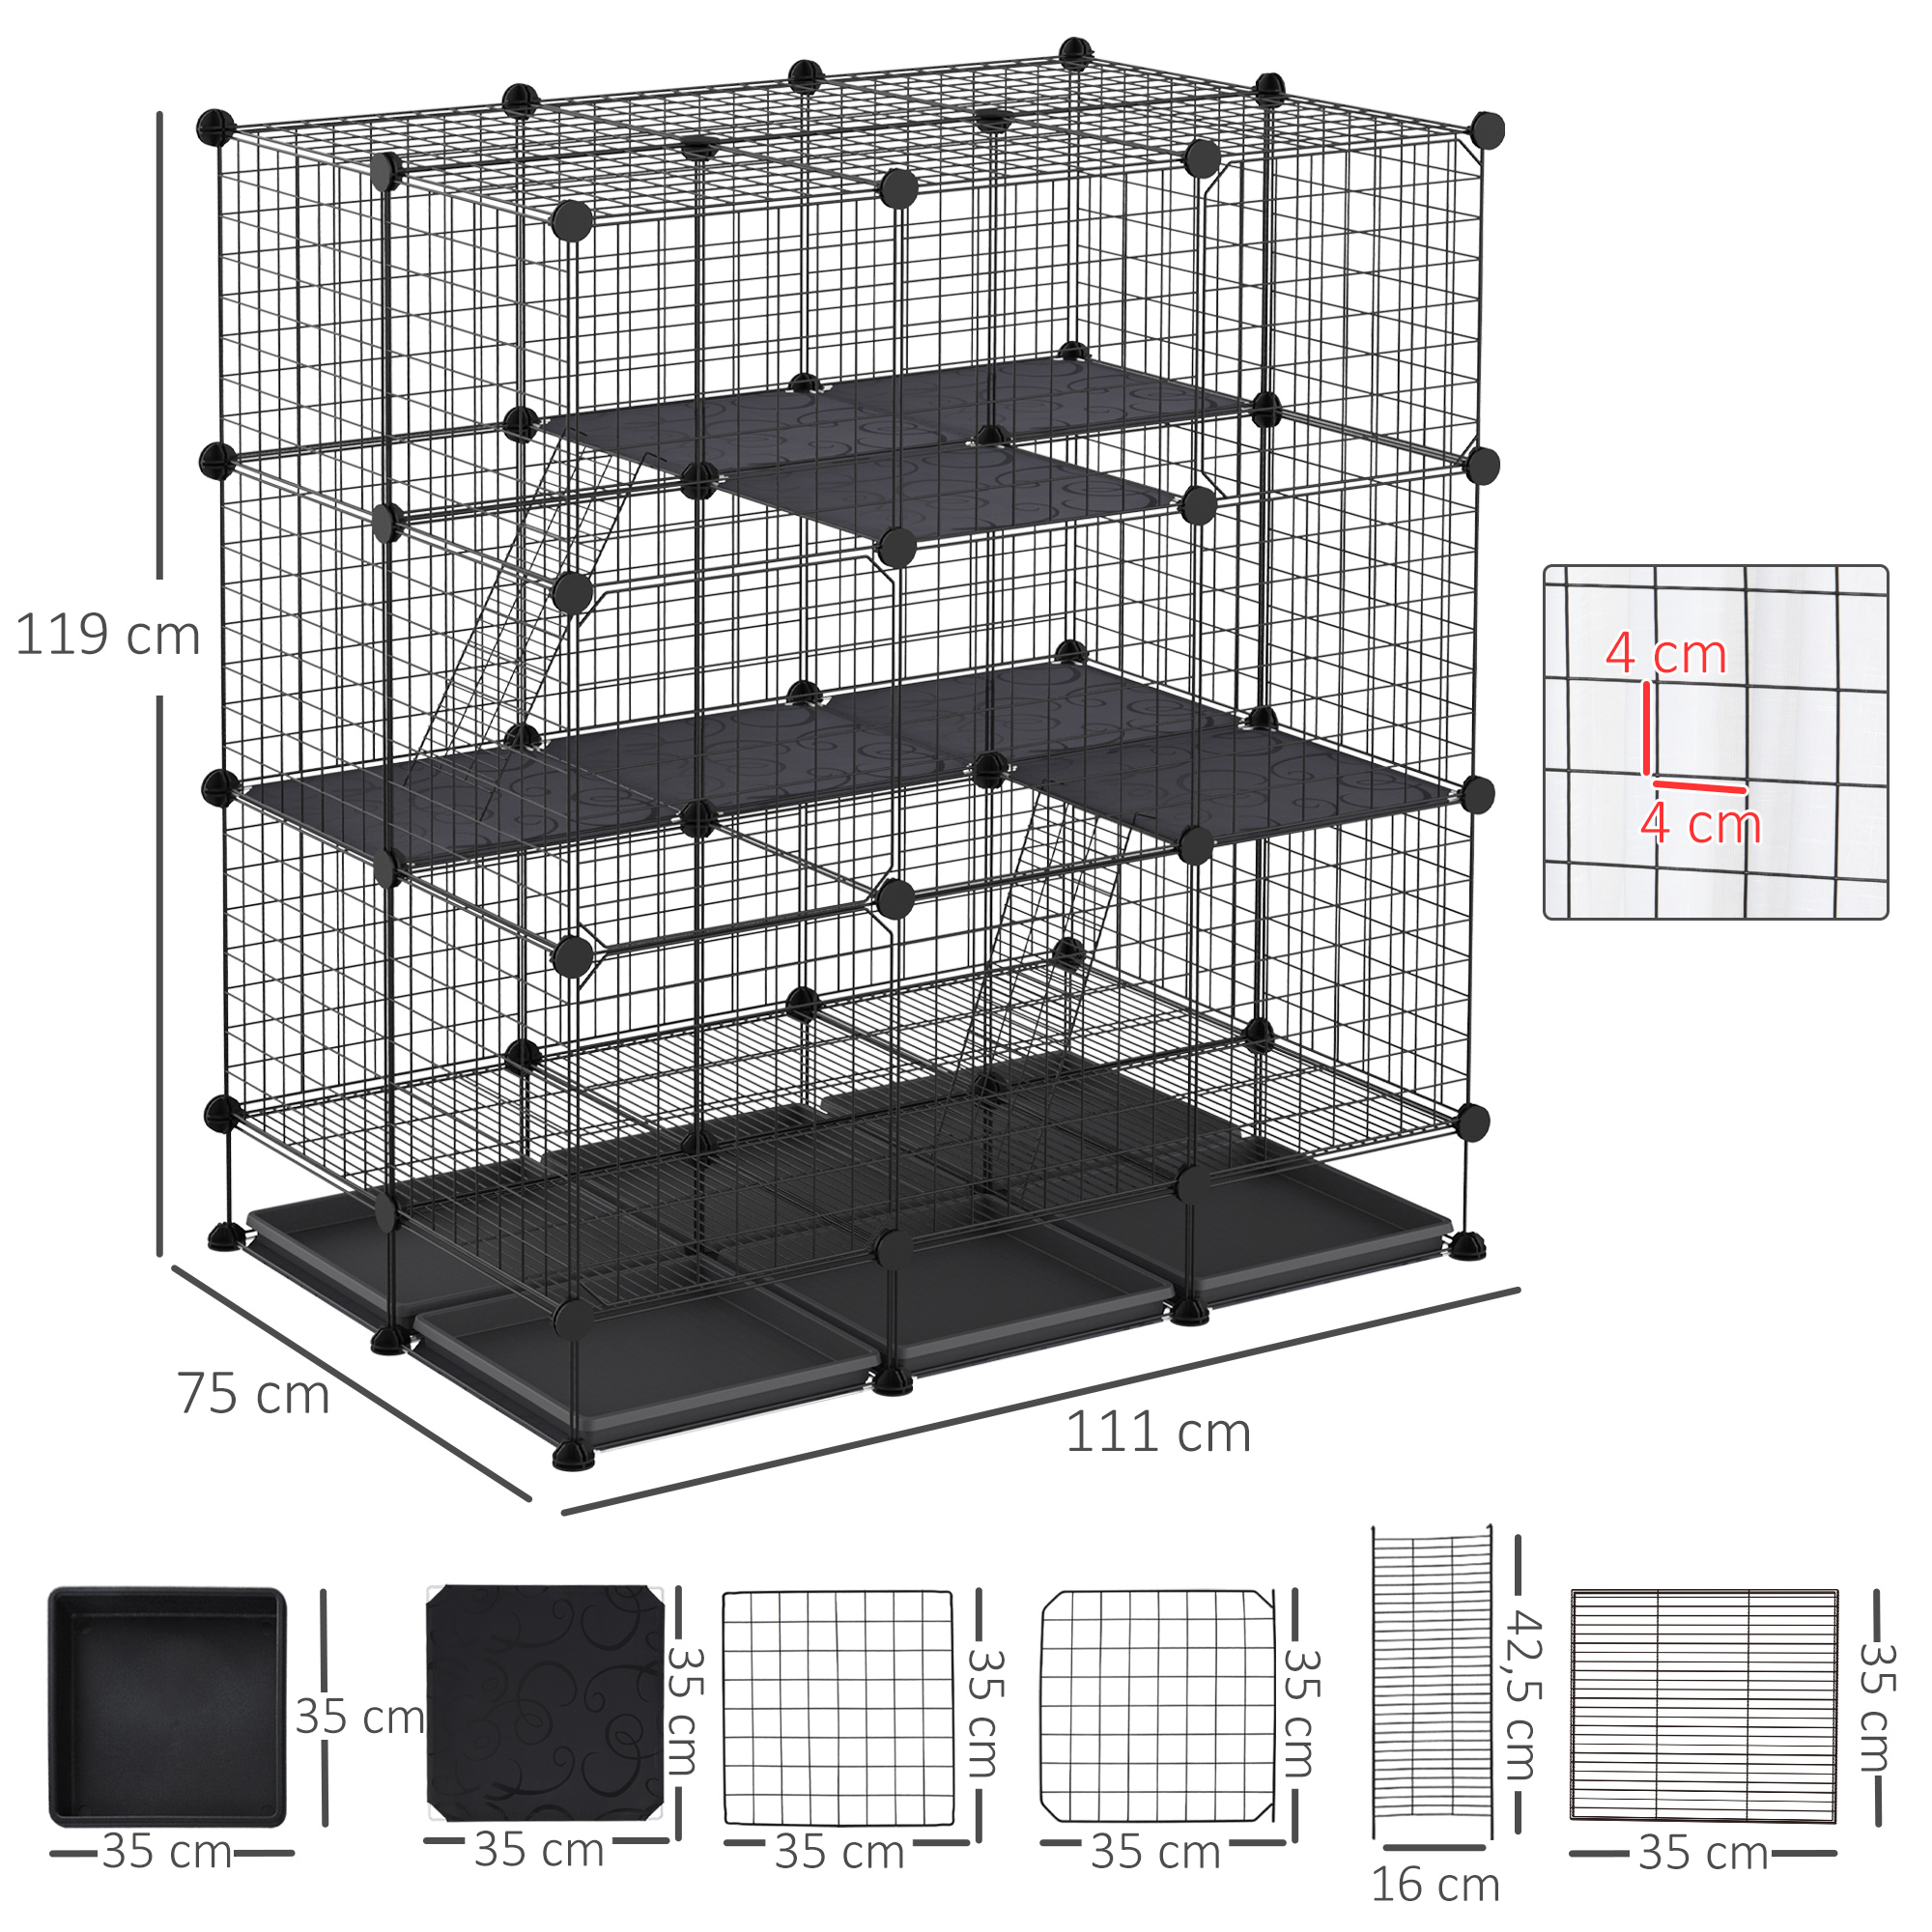 Trampa para animales vivos 60x18x20 cm jaula trampa para gatos con 2  puertas asa y marco